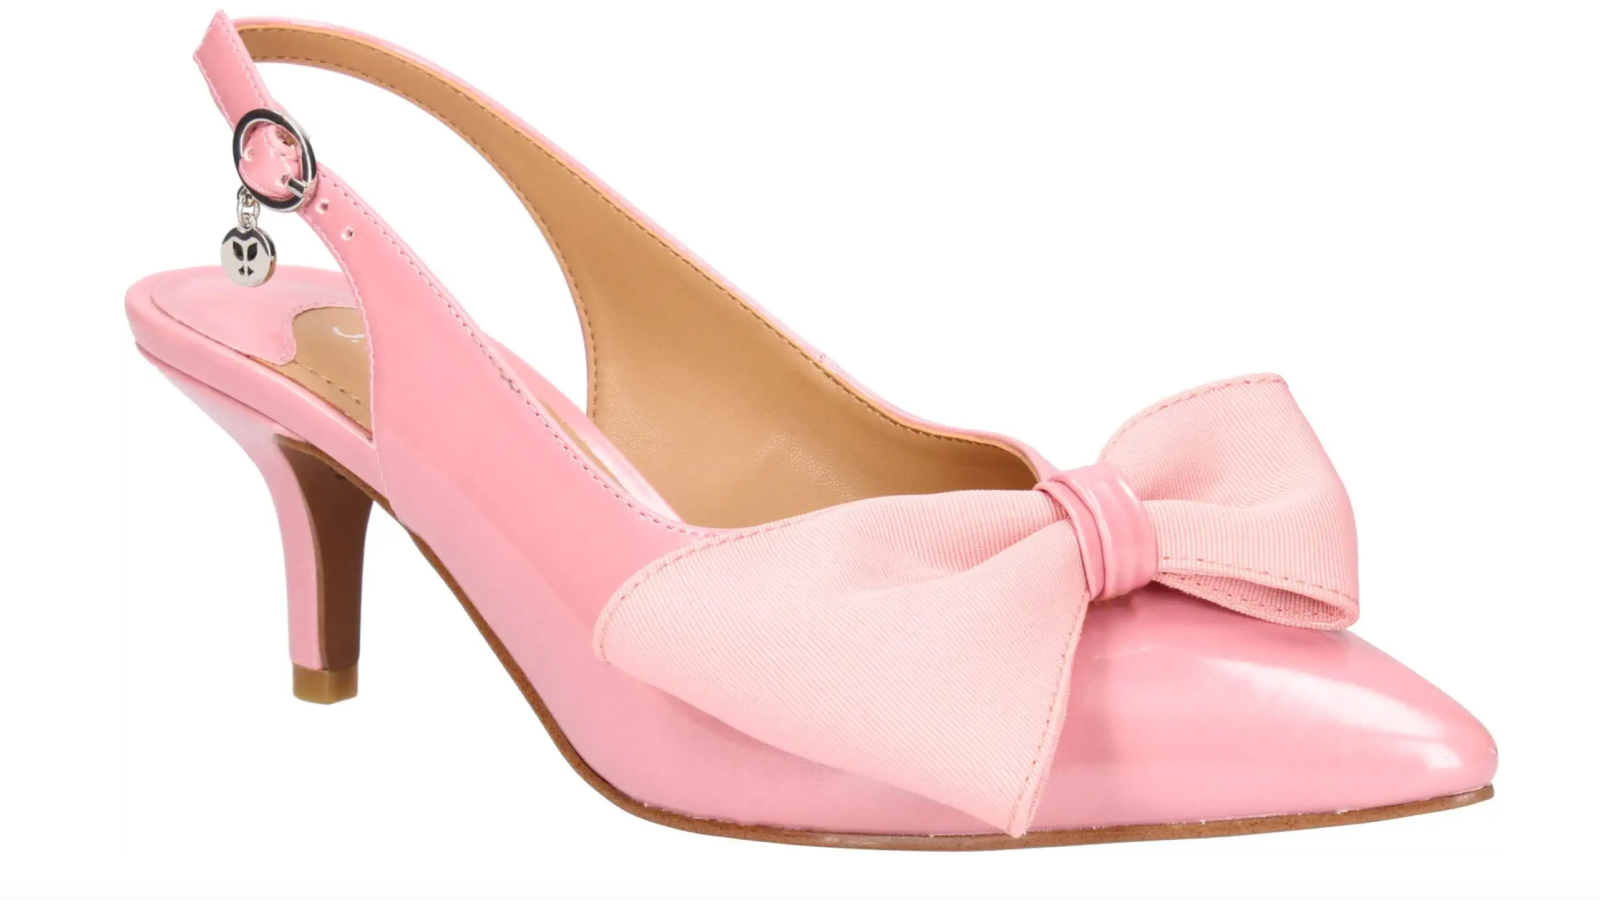 pink kitten heels